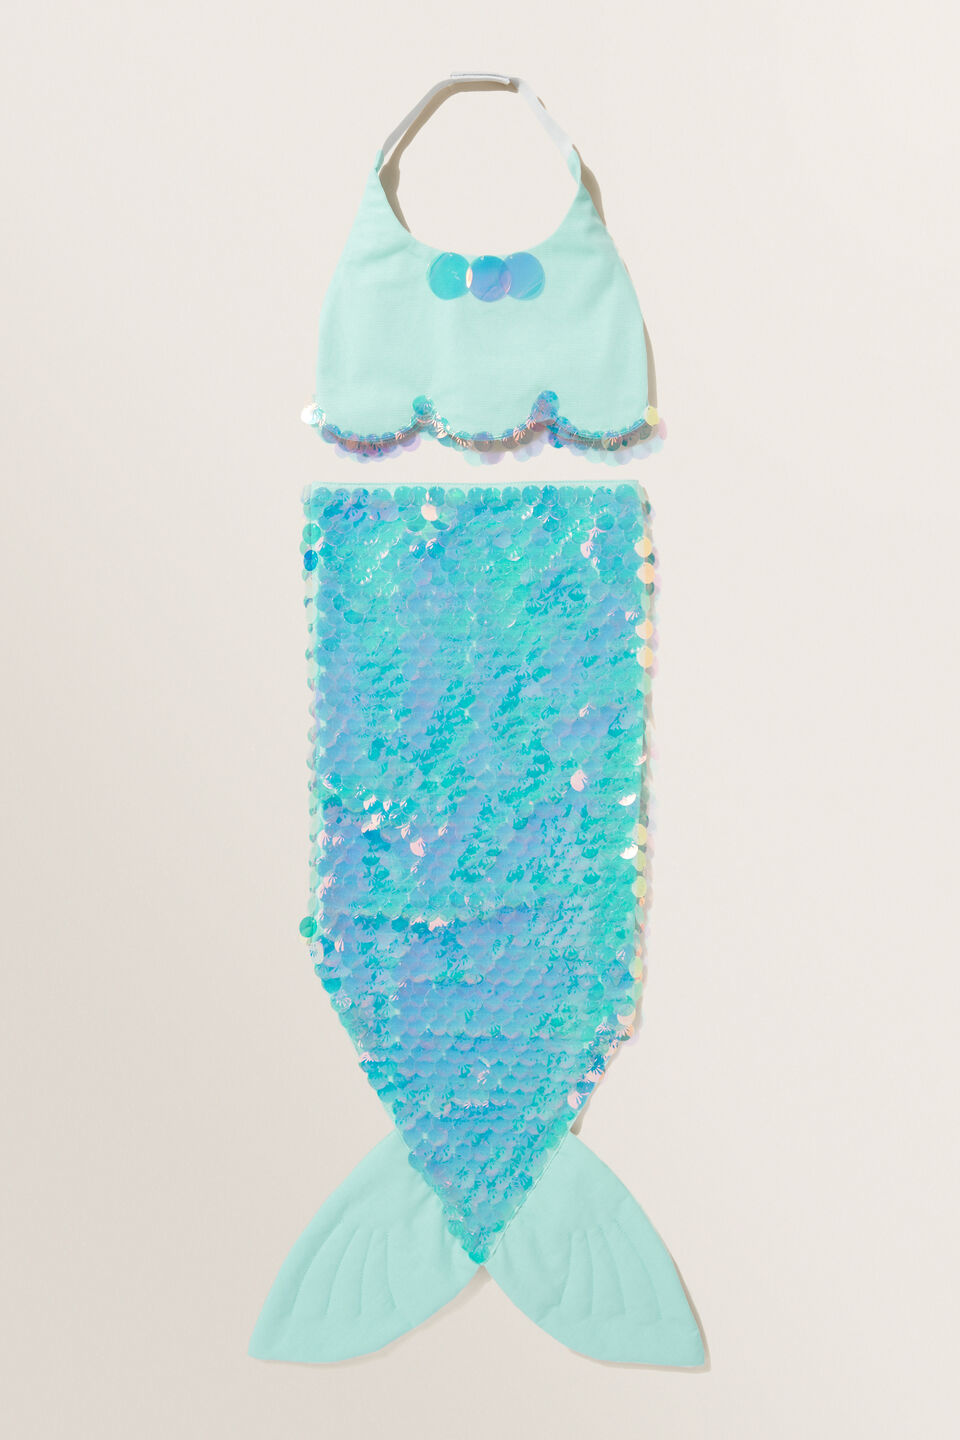 Mermaid Tail Dress Up Set  Cool Mint